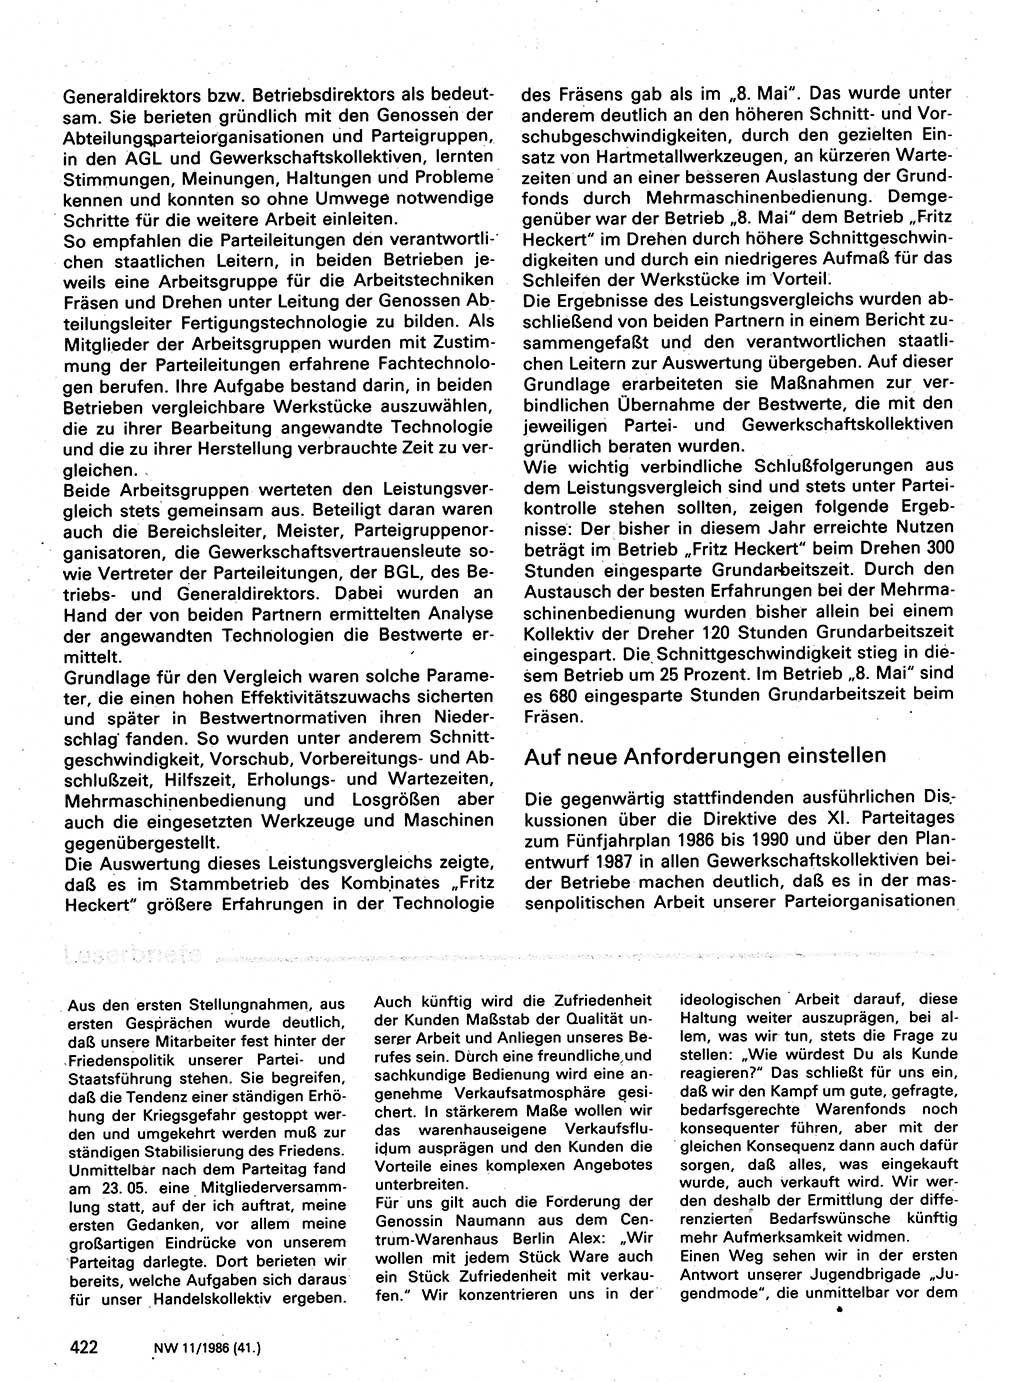 Neuer Weg (NW), Organ des Zentralkomitees (ZK) der SED (Sozialistische Einheitspartei Deutschlands) für Fragen des Parteilebens, 41. Jahrgang [Deutsche Demokratische Republik (DDR)] 1986, Seite 422 (NW ZK SED DDR 1986, S. 422)